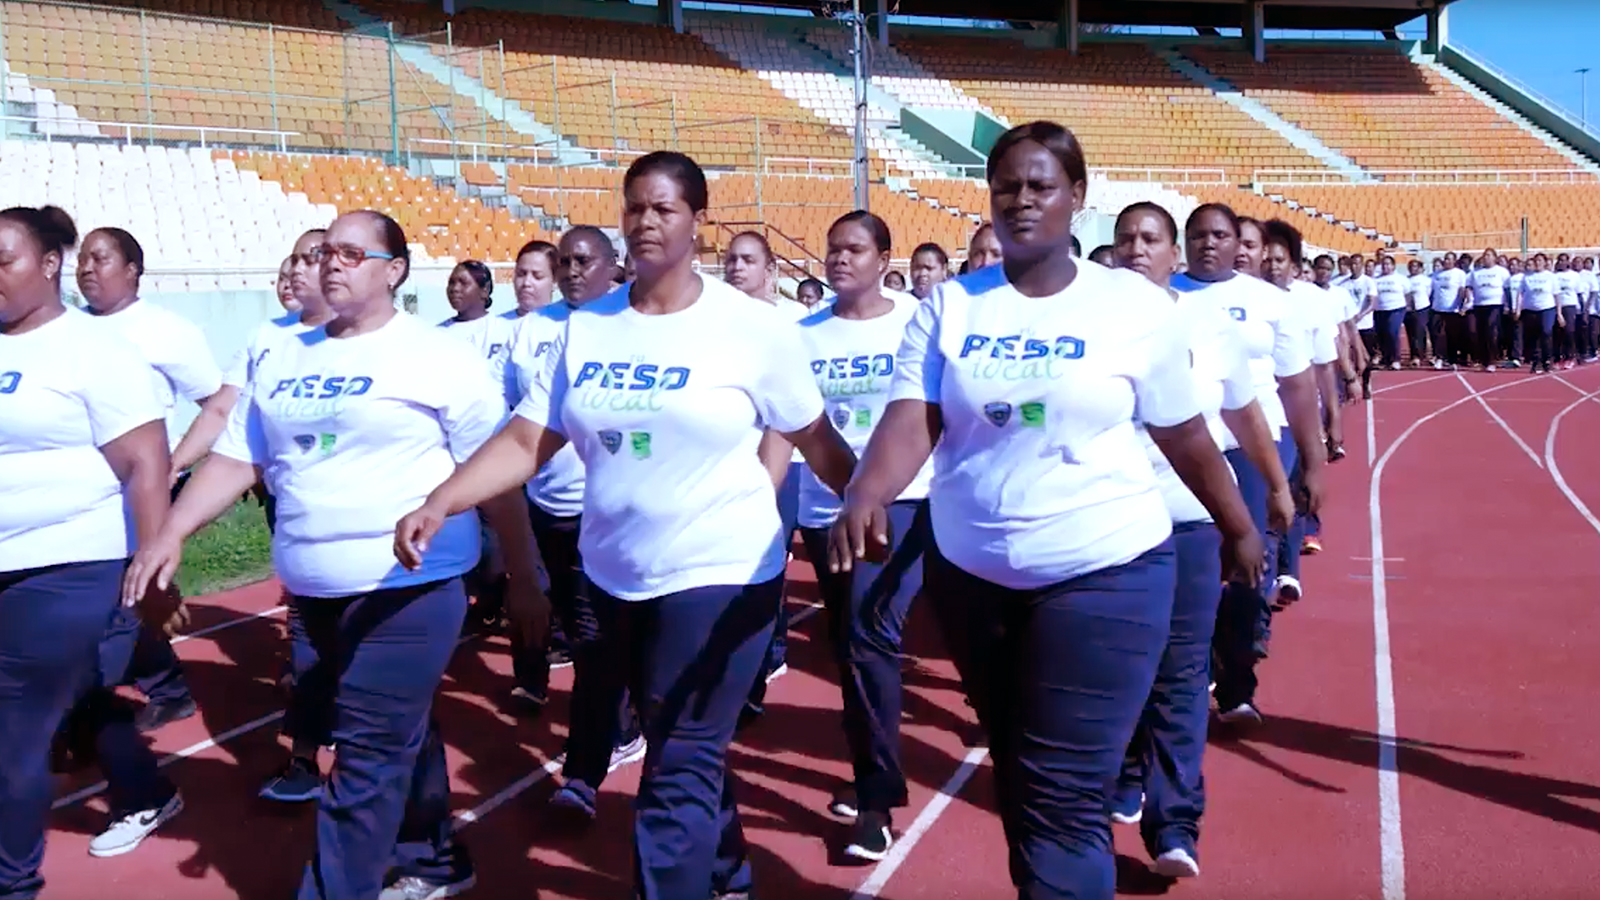 REPÚBLICA DOMINICANA: Policía Nacional inicia primer entrenamiento físico de Tu Peso Ideal